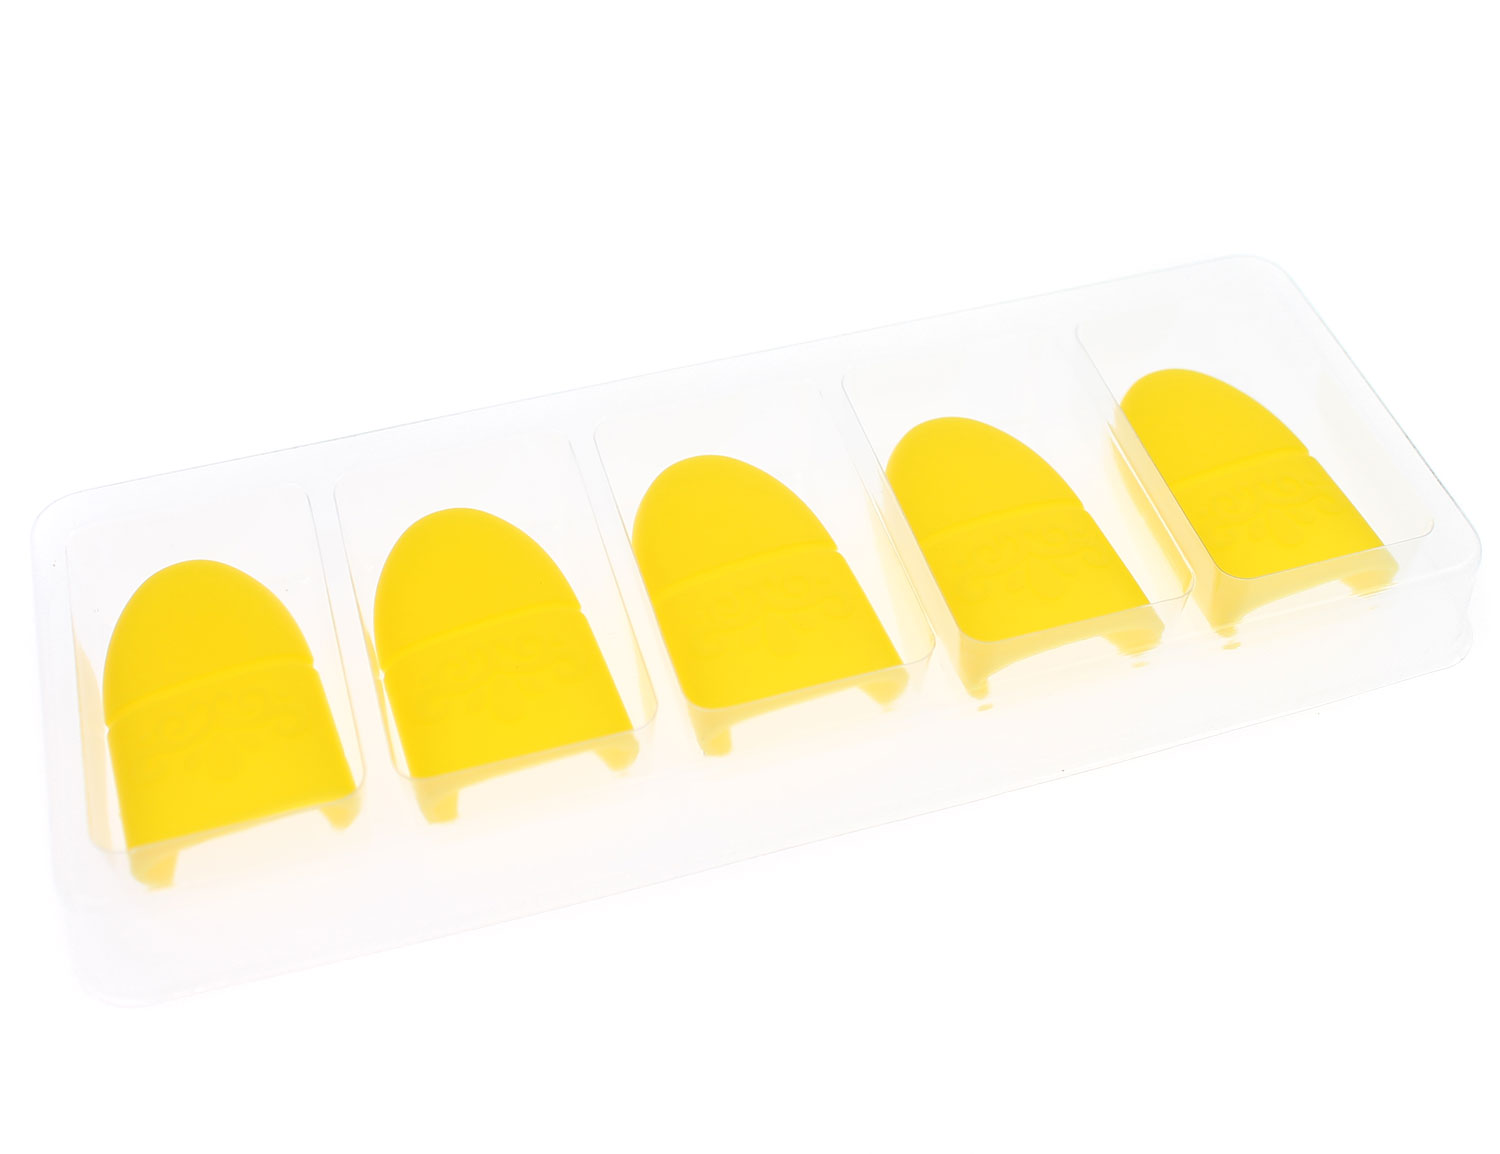 Силиконовые колпачки для снятия гель-лака (набор 5 шт) жёлтые